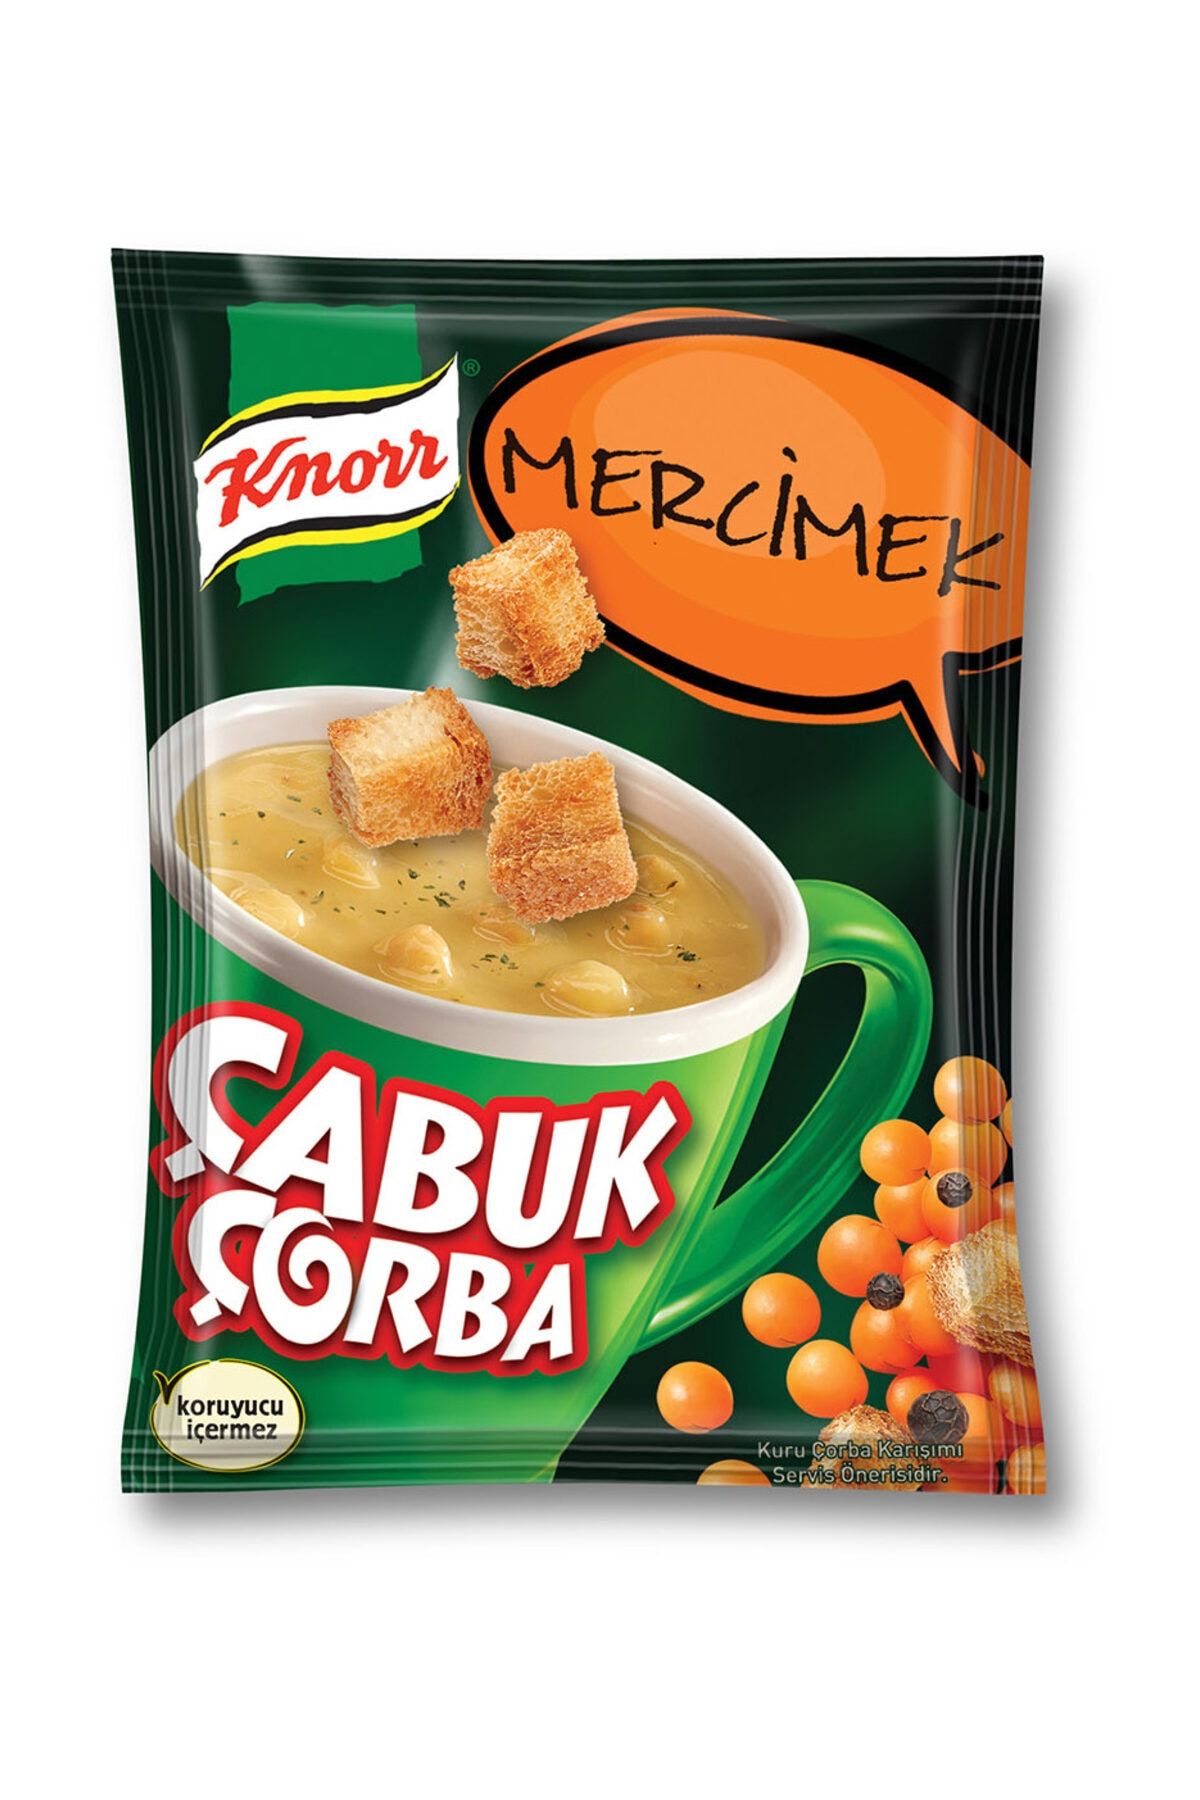 Knorr Mercimek Çabuk Çorba 22 gr